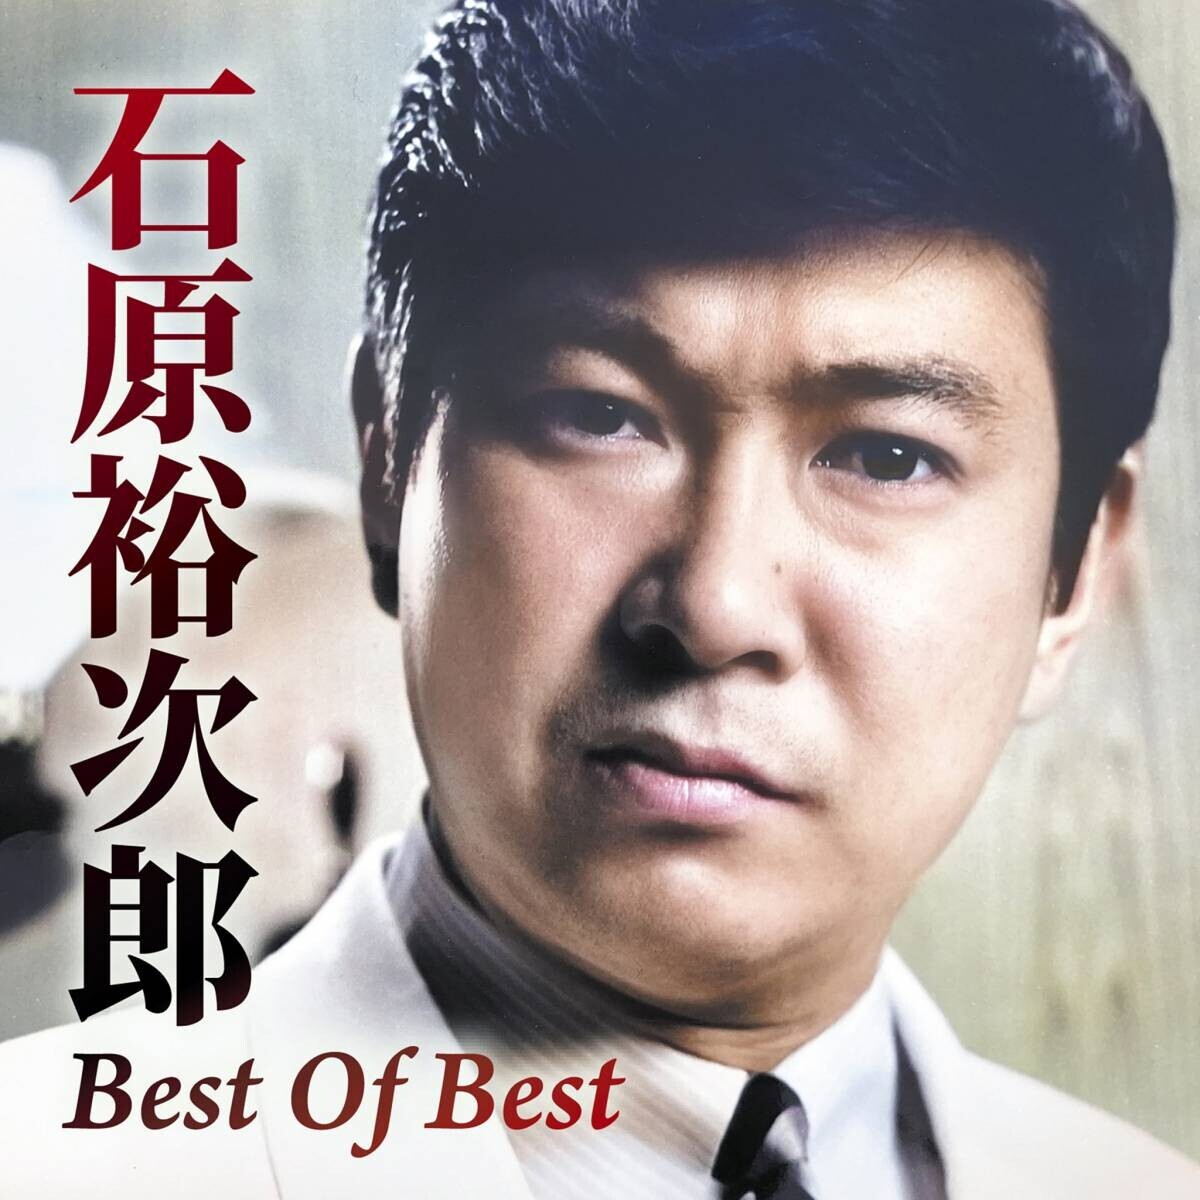 石原裕次郎生誕90年 ファンが選んだベストアルバム「Best Of Best」発売